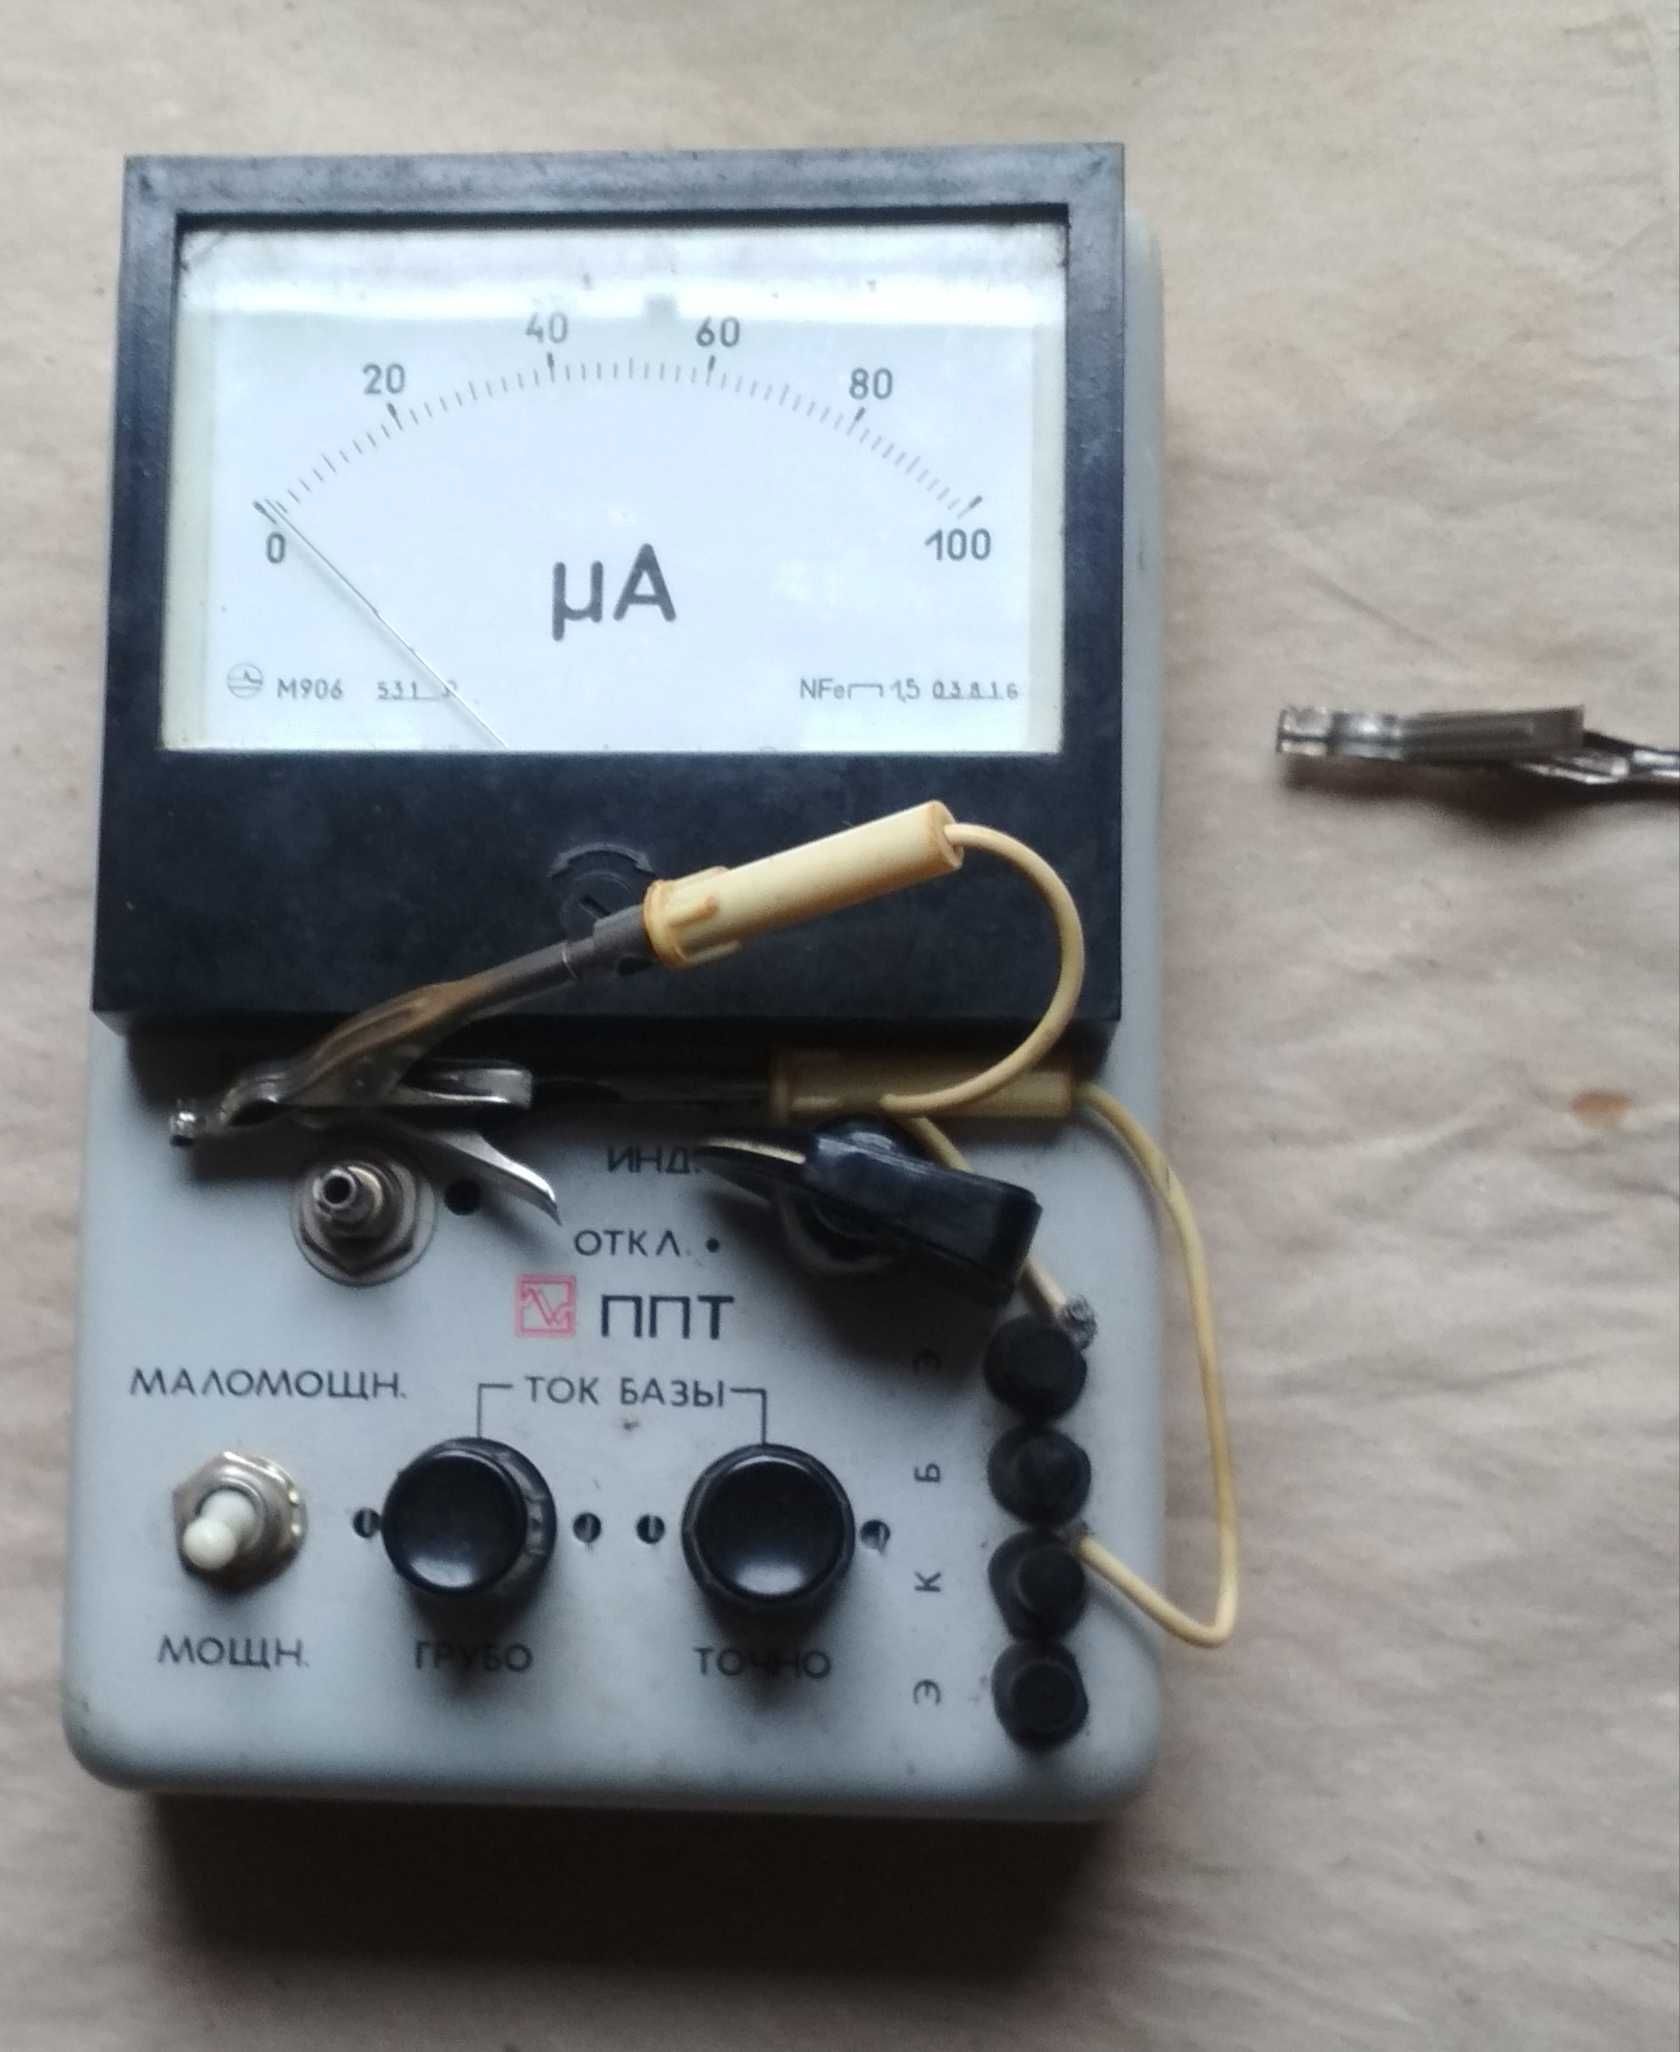 Прибор для проверки транзисторов (ППТ),1986 г.,№3627 в родной коробке.